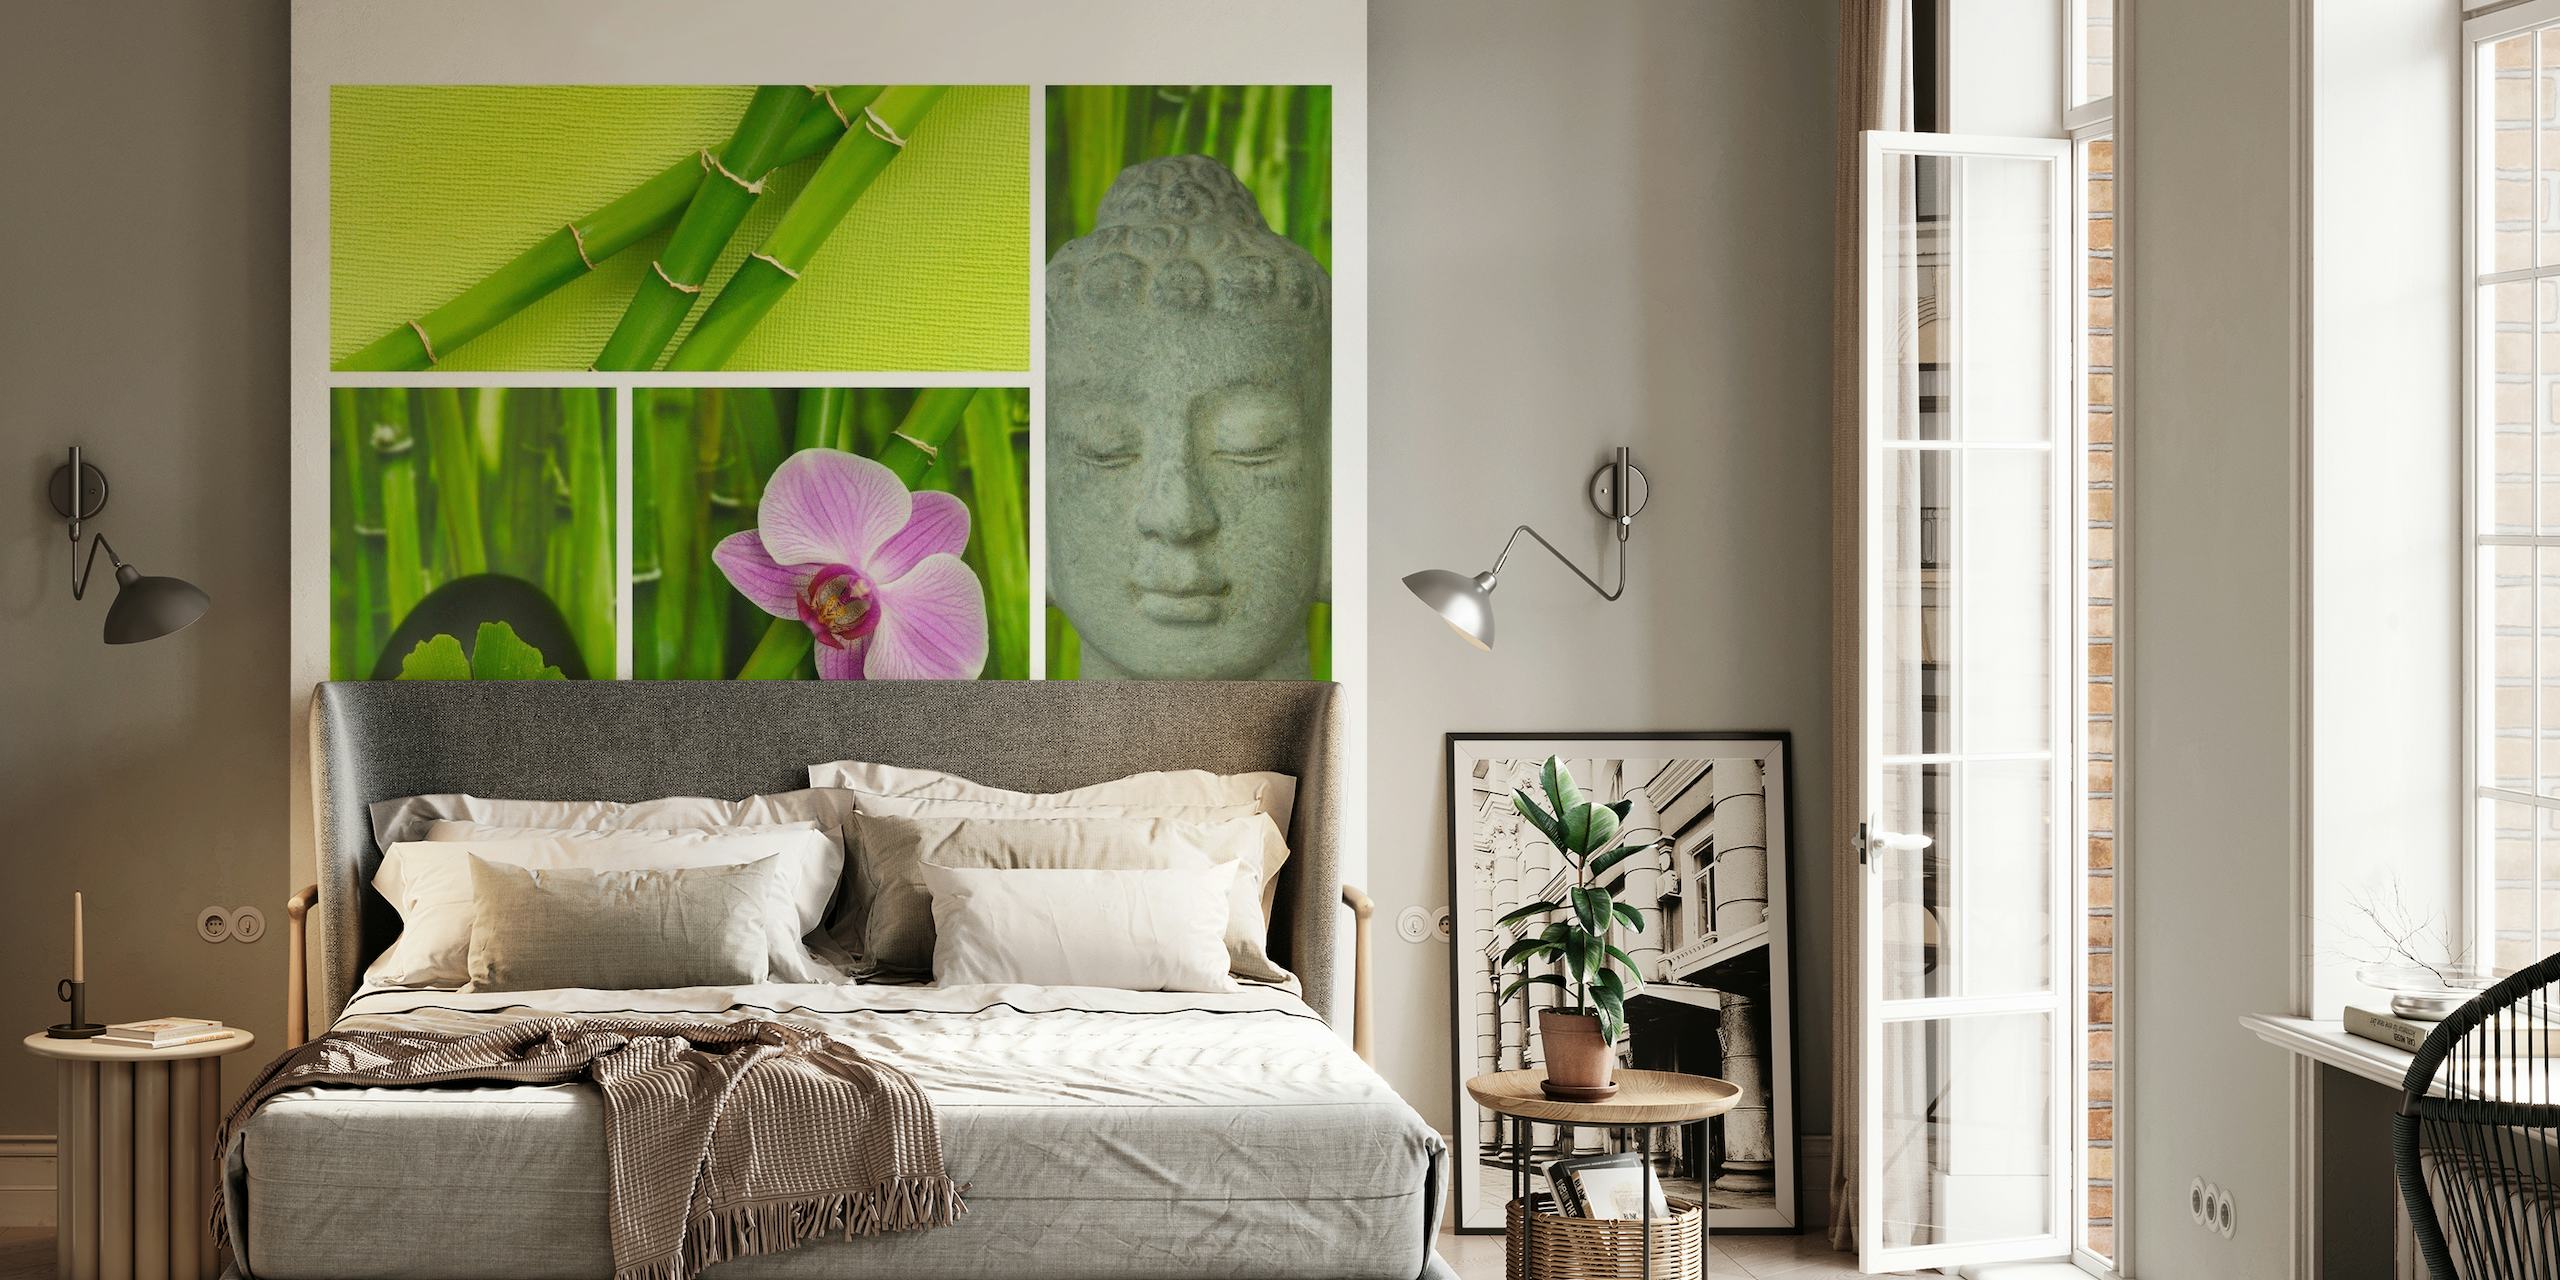 Relax Zen en Boeddha fotobehang met bamboe, orchidee, Boeddha gezicht en 'Relax' tekst